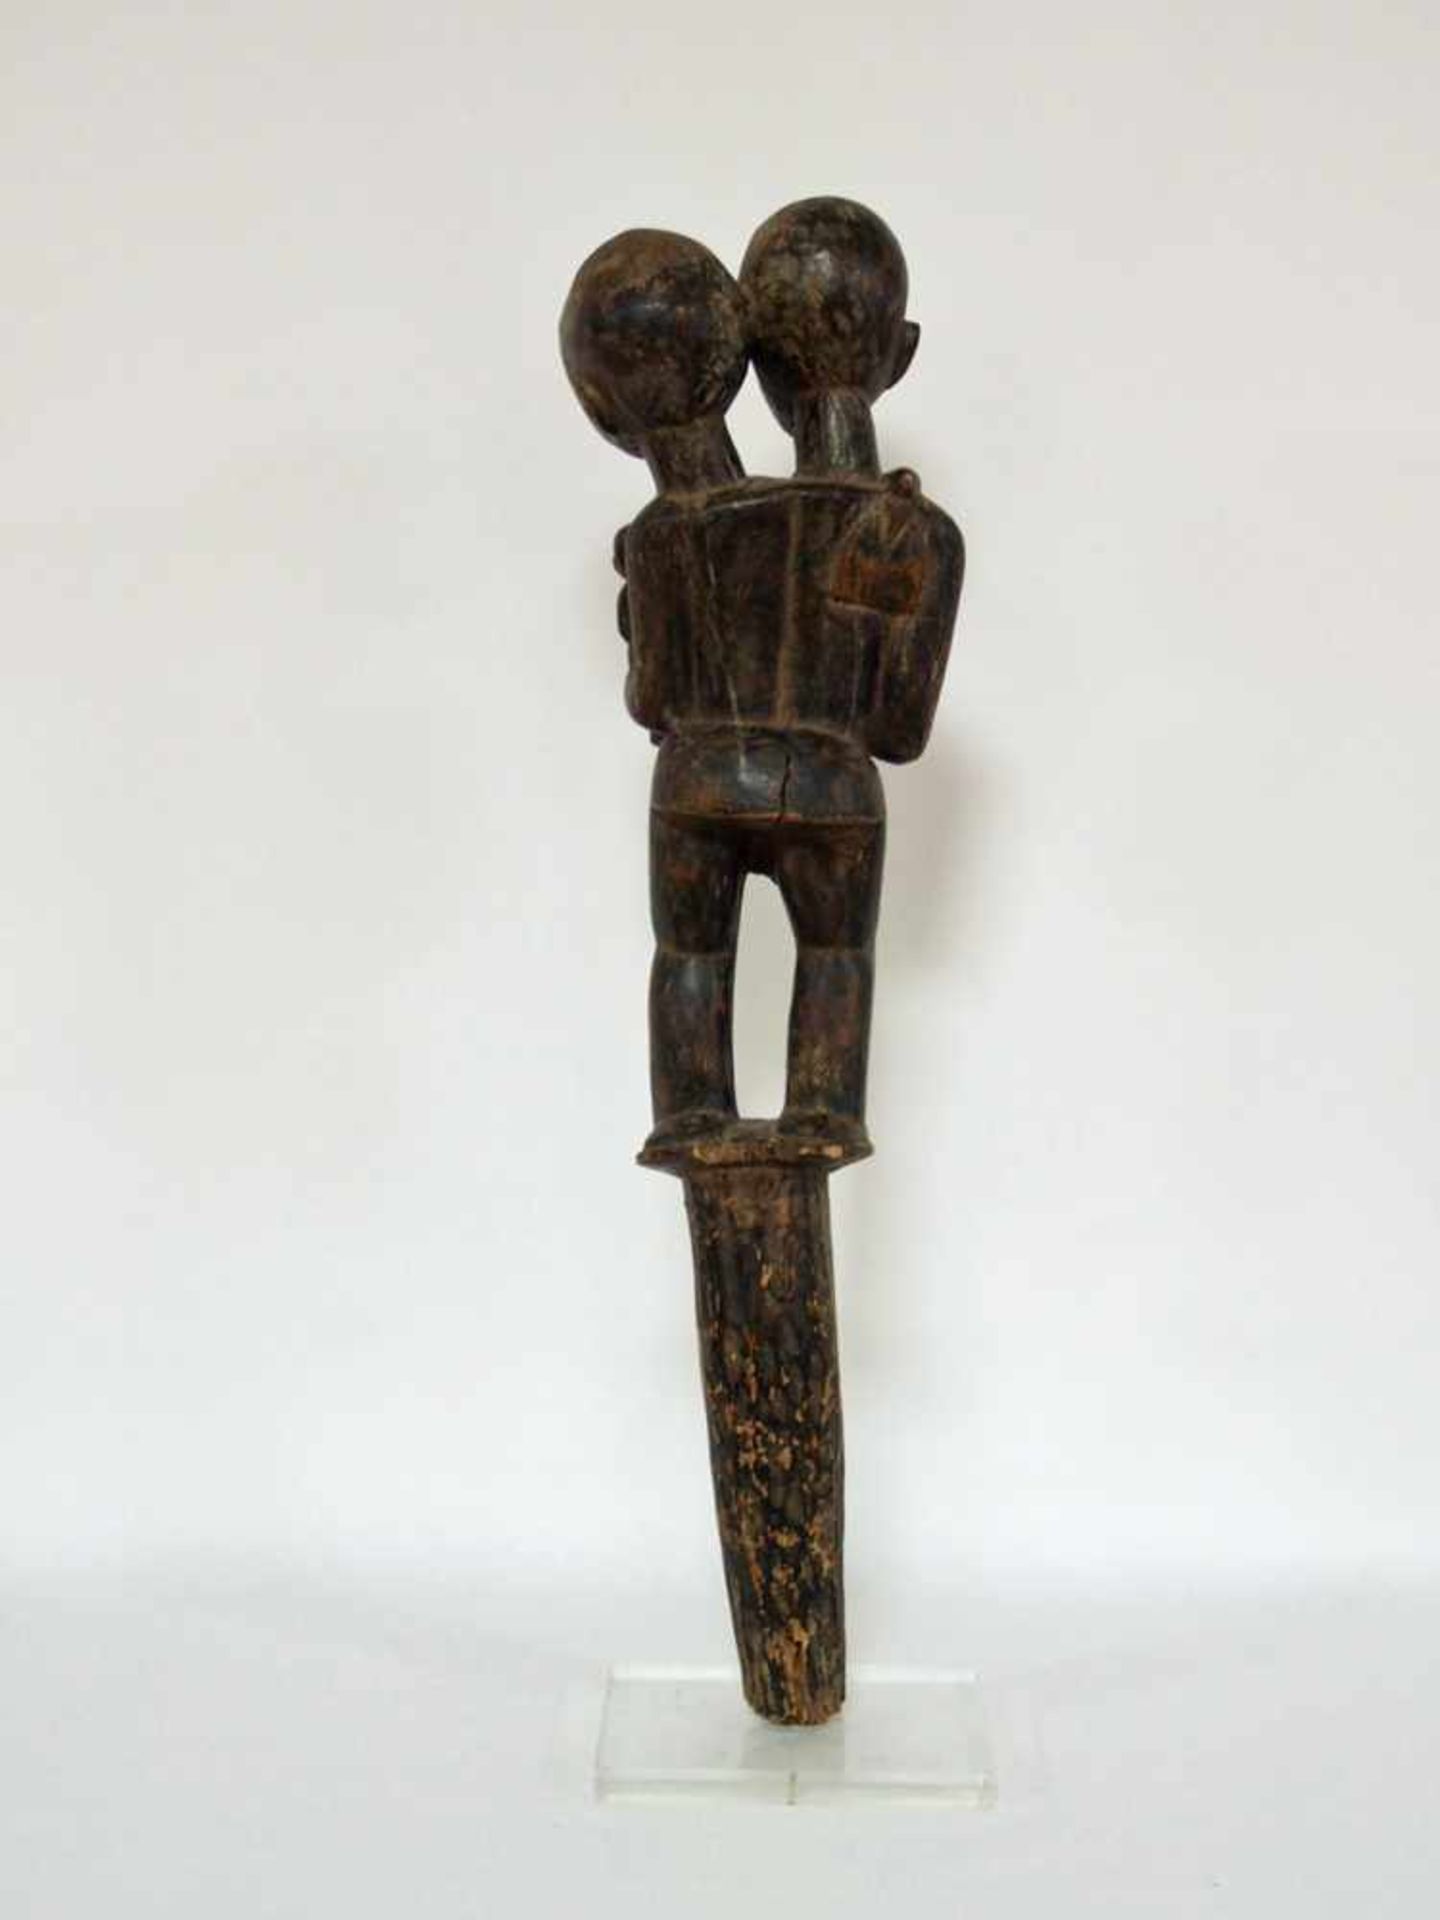 Stab mit ZwillingsfigurHolz, geschnitzt, Dogon, Mali, 1. Hälfte 20. Jahrhundert, Höhe 94 cm- - -25. - Bild 3 aus 3